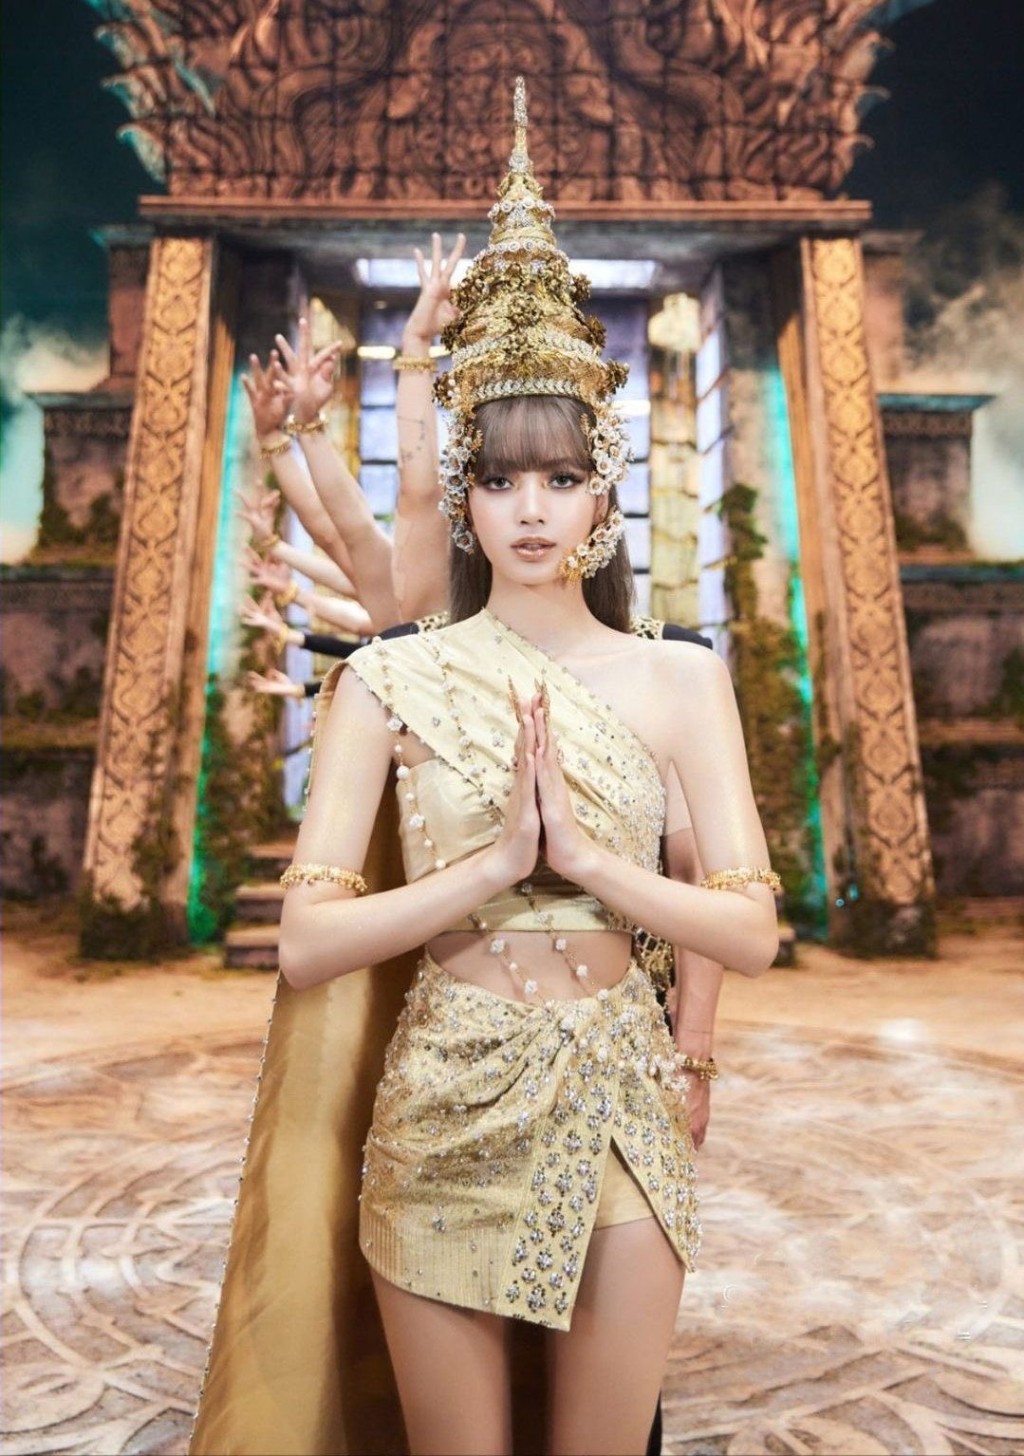 近年因爲泰国人气古装神剧《天生一对》（Love Destiny）以及Blackpink成员 Lisa在Lalisa 音乐影片穿过传统泰服，因而掀起贵族泰服热潮。不少网红跟随热潮也到泰国曼谷影贵族泰服写真。